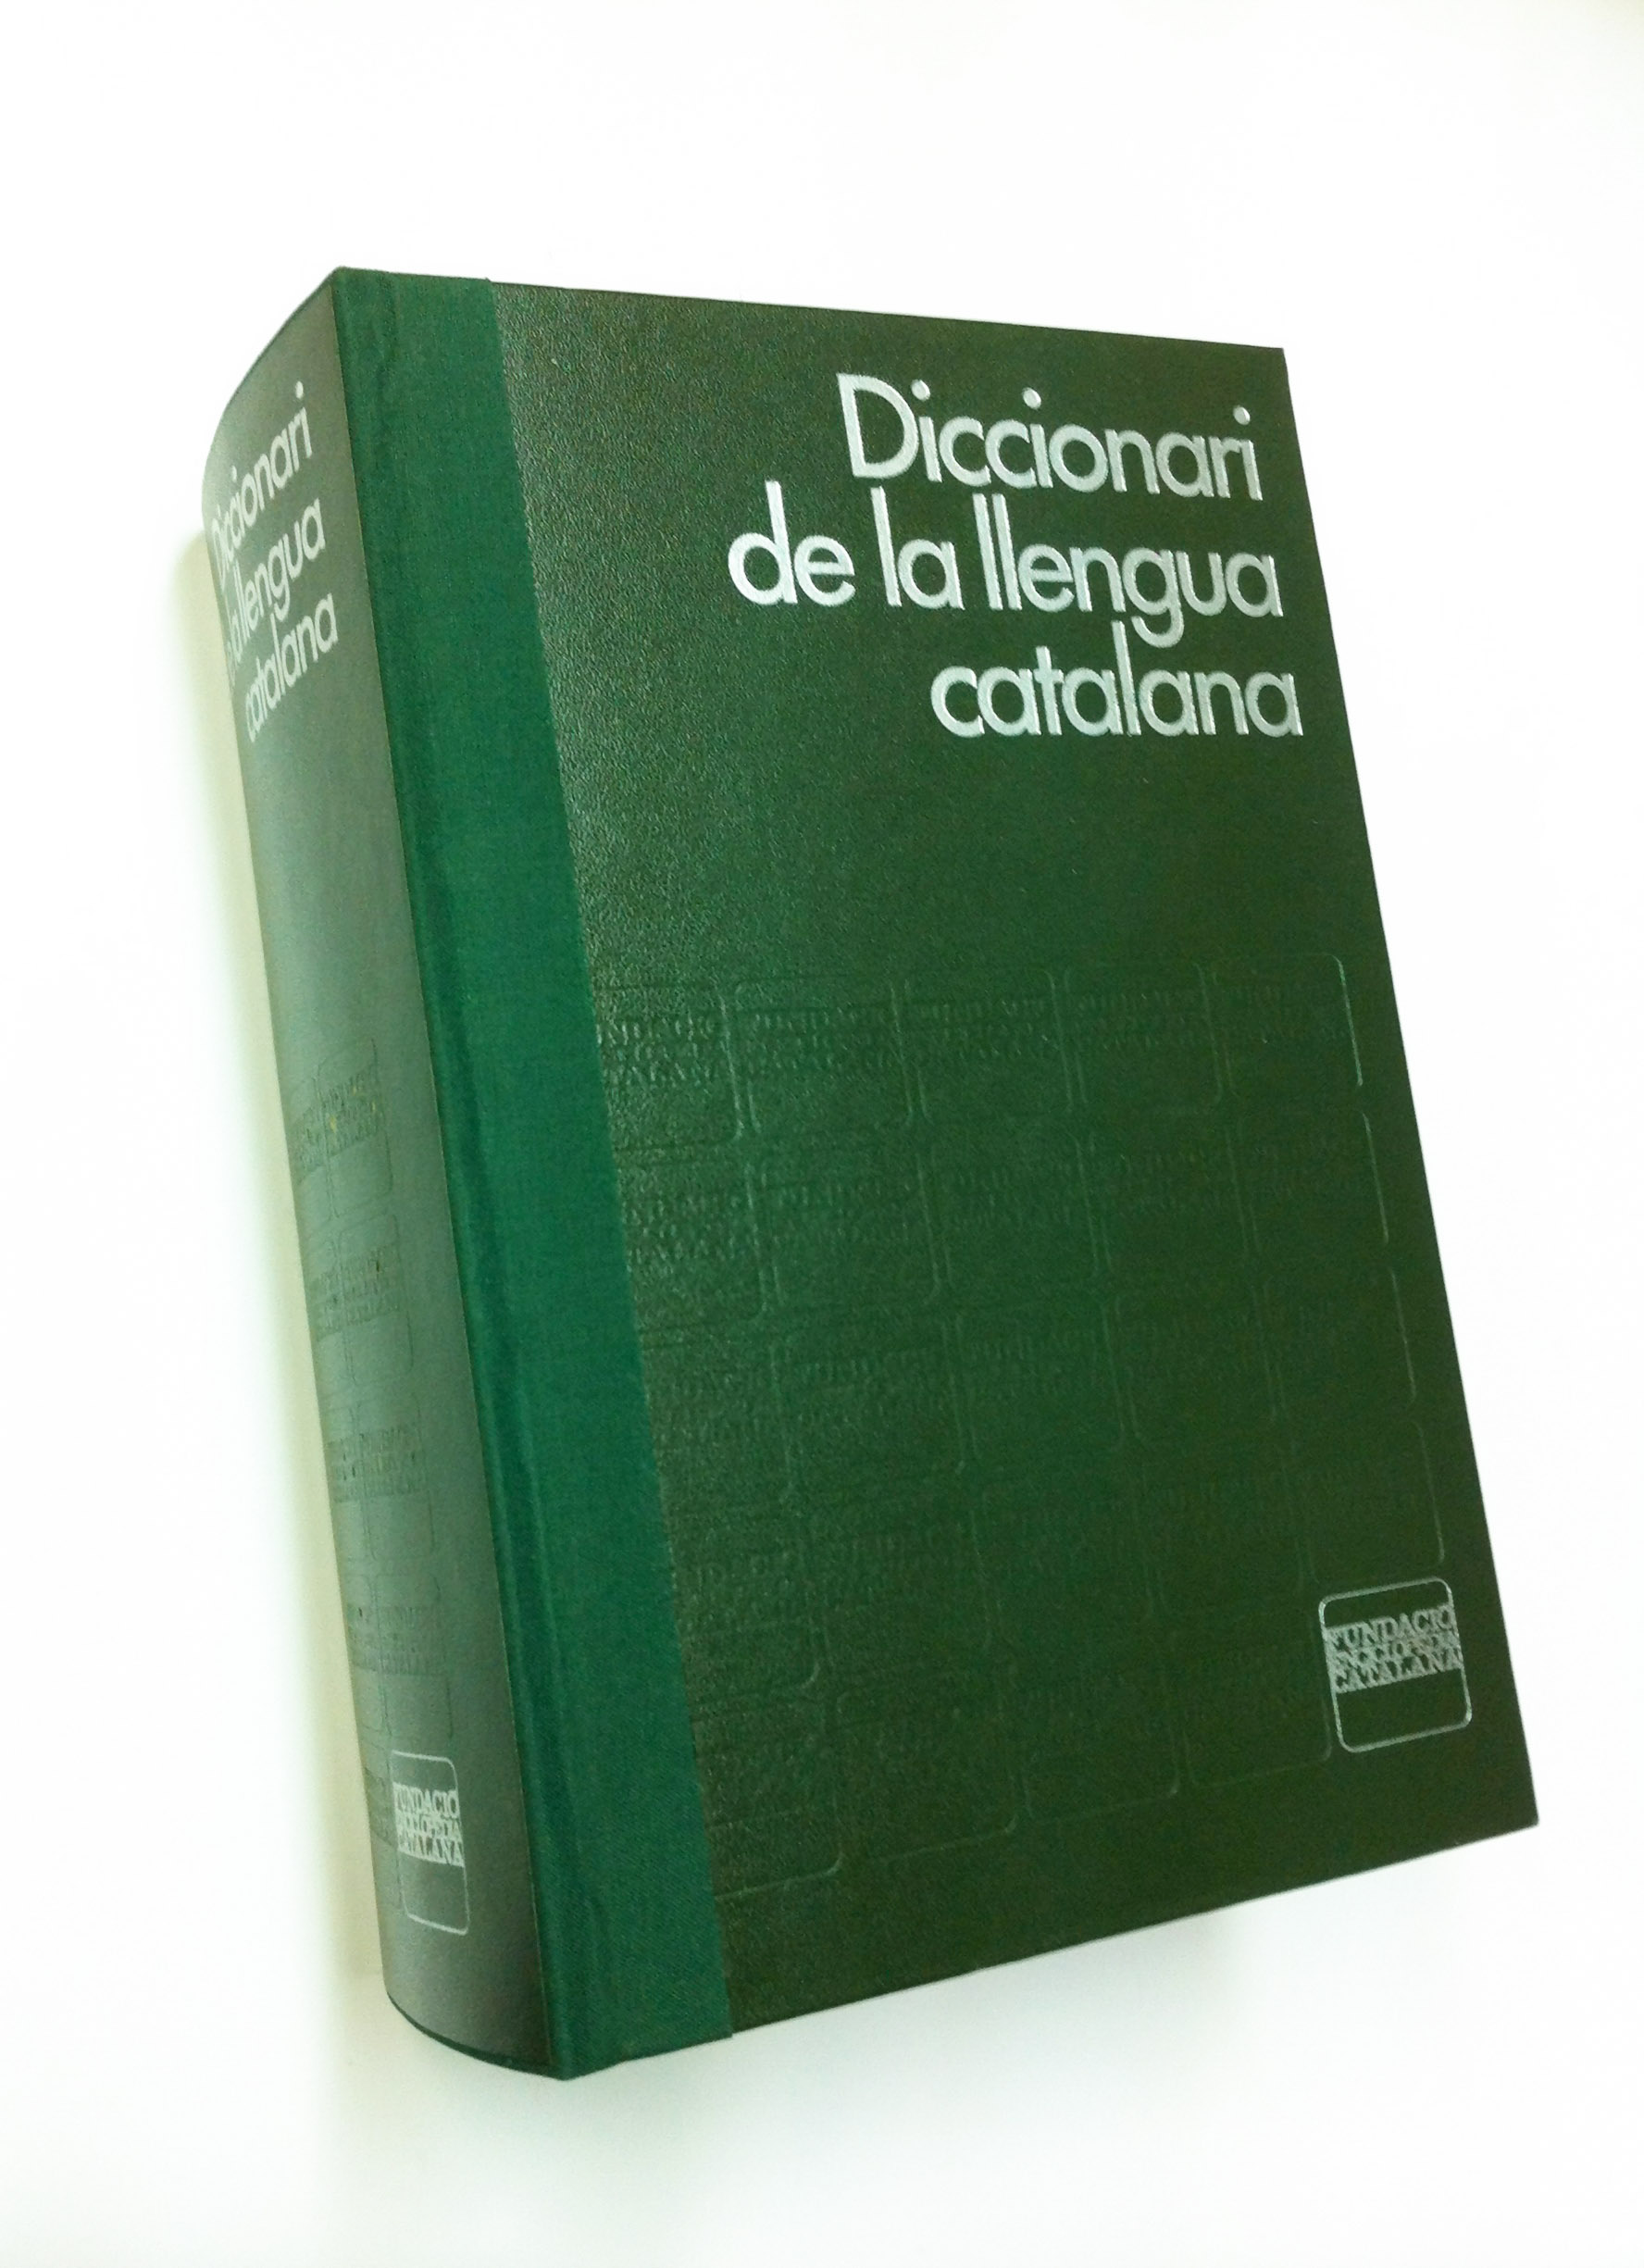 Diccionari restaurat